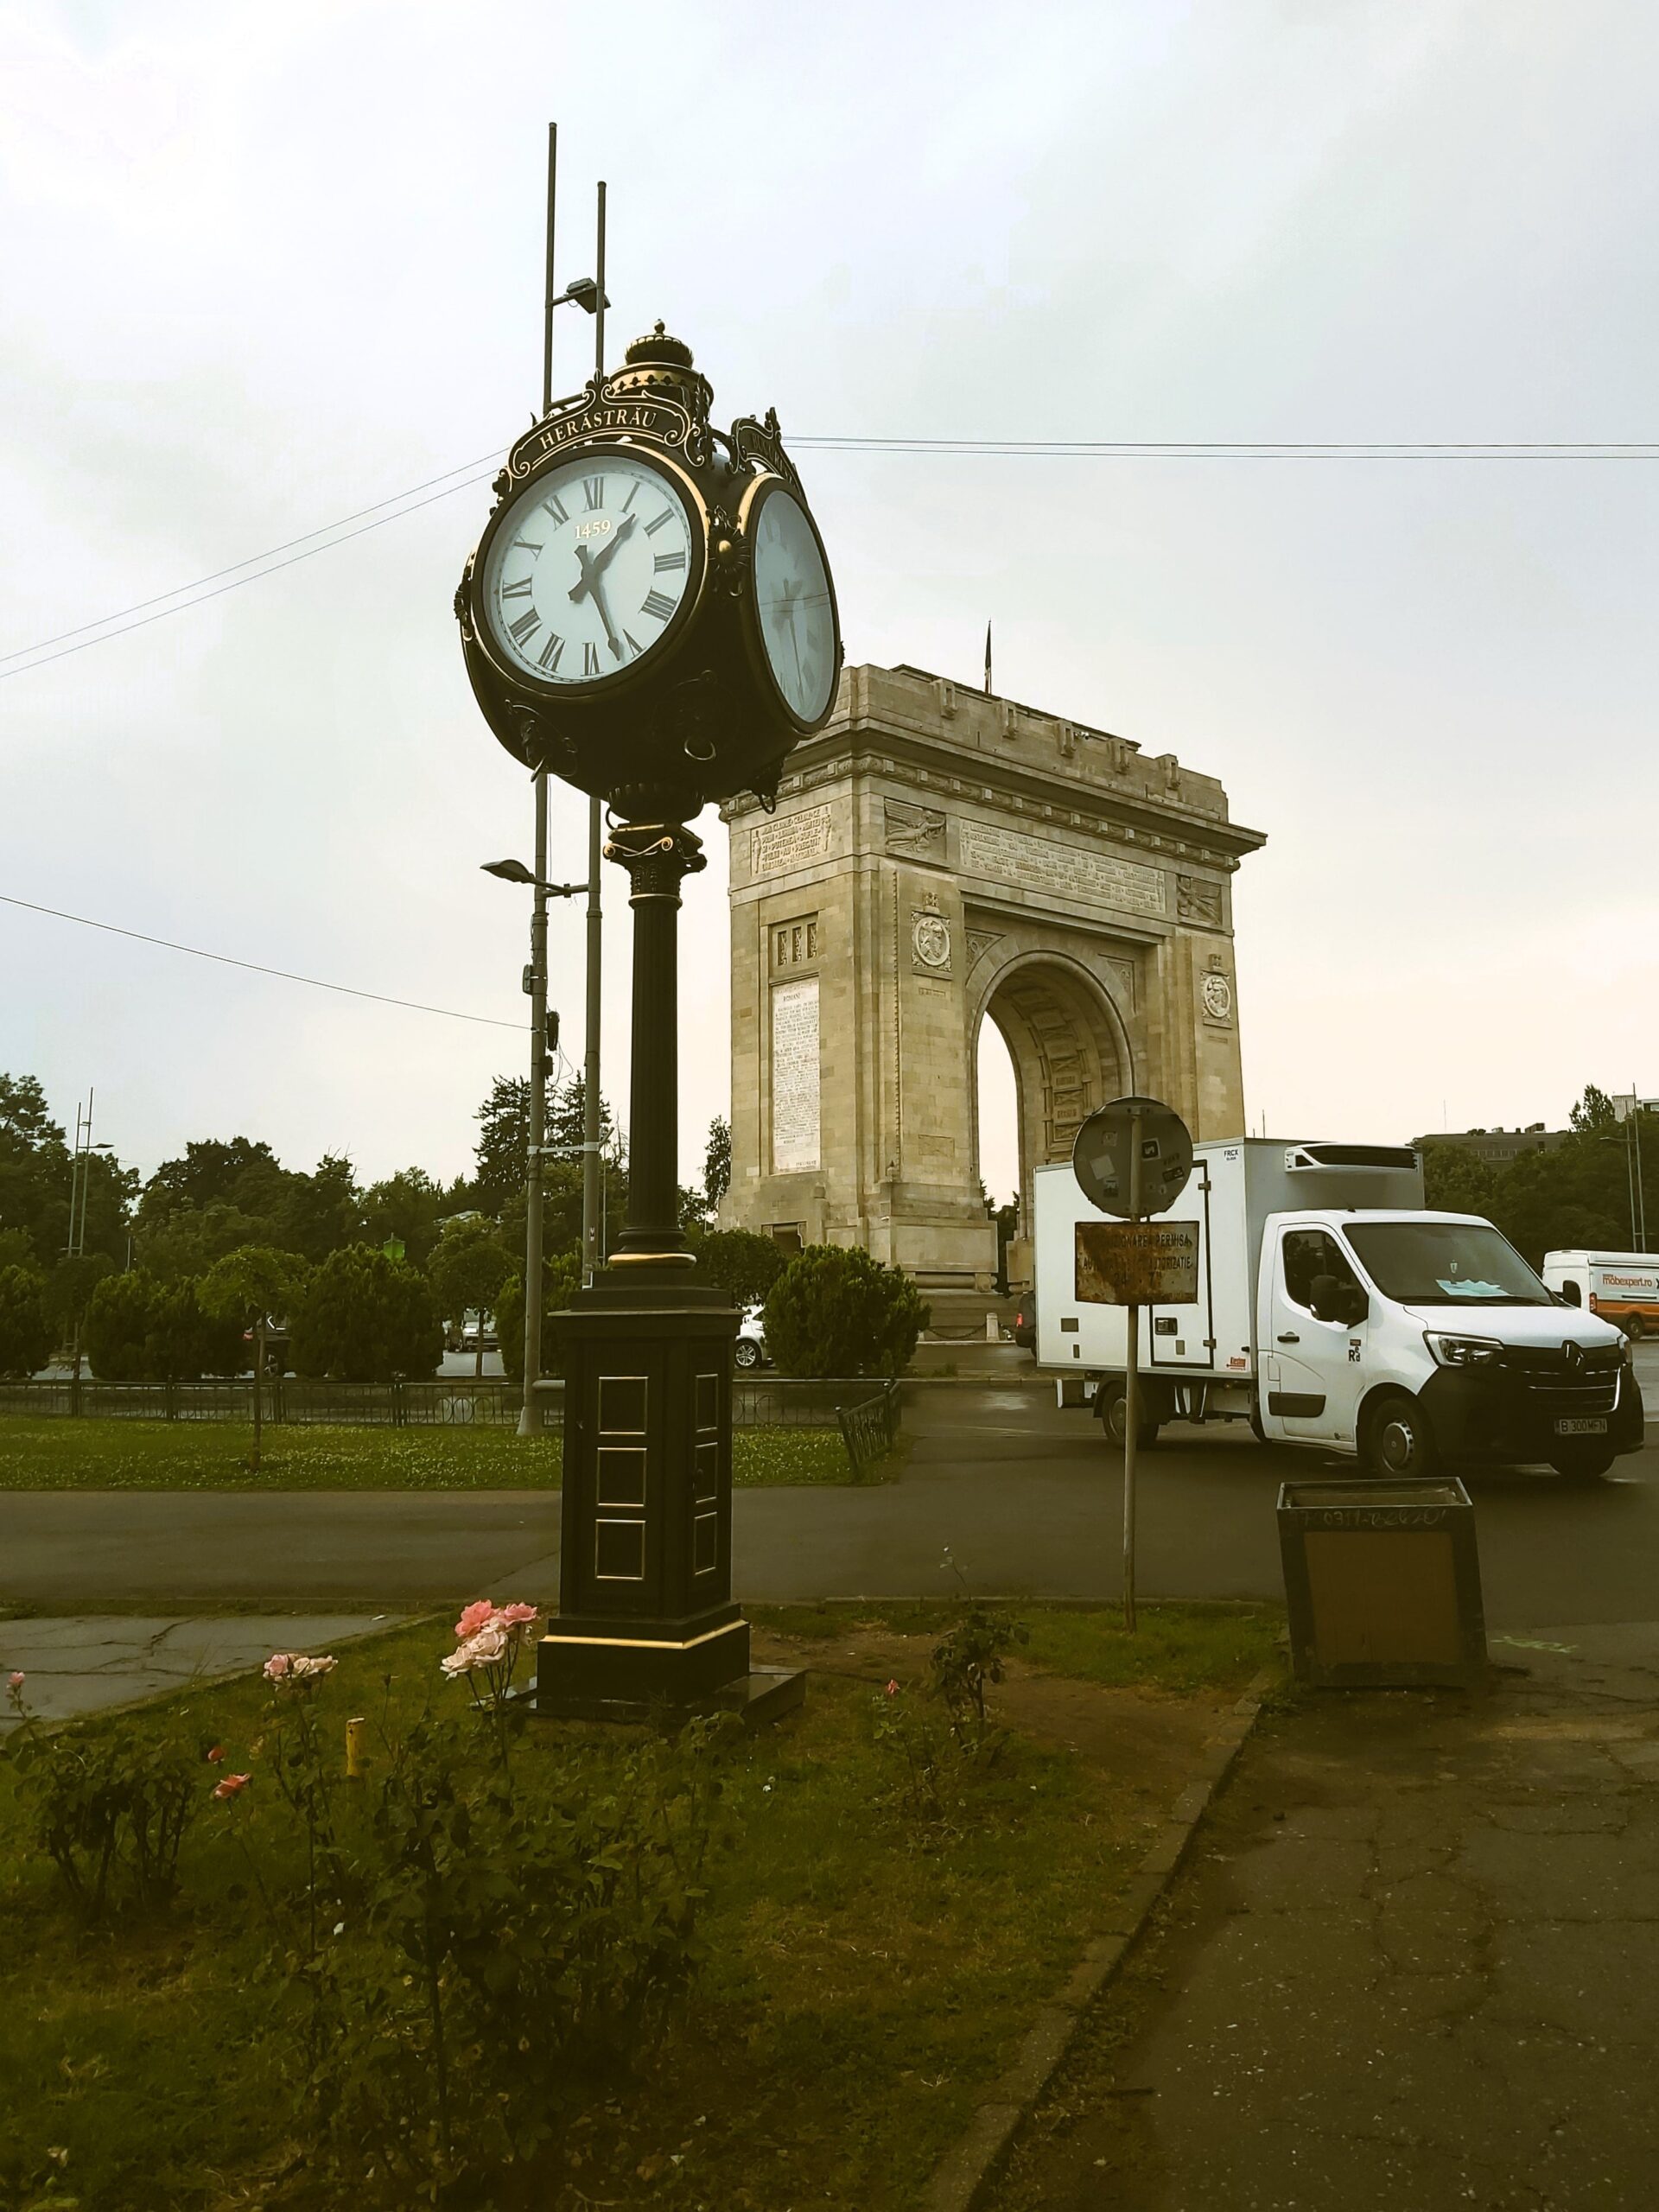 Arcul de Triumf and clock in București, Romania